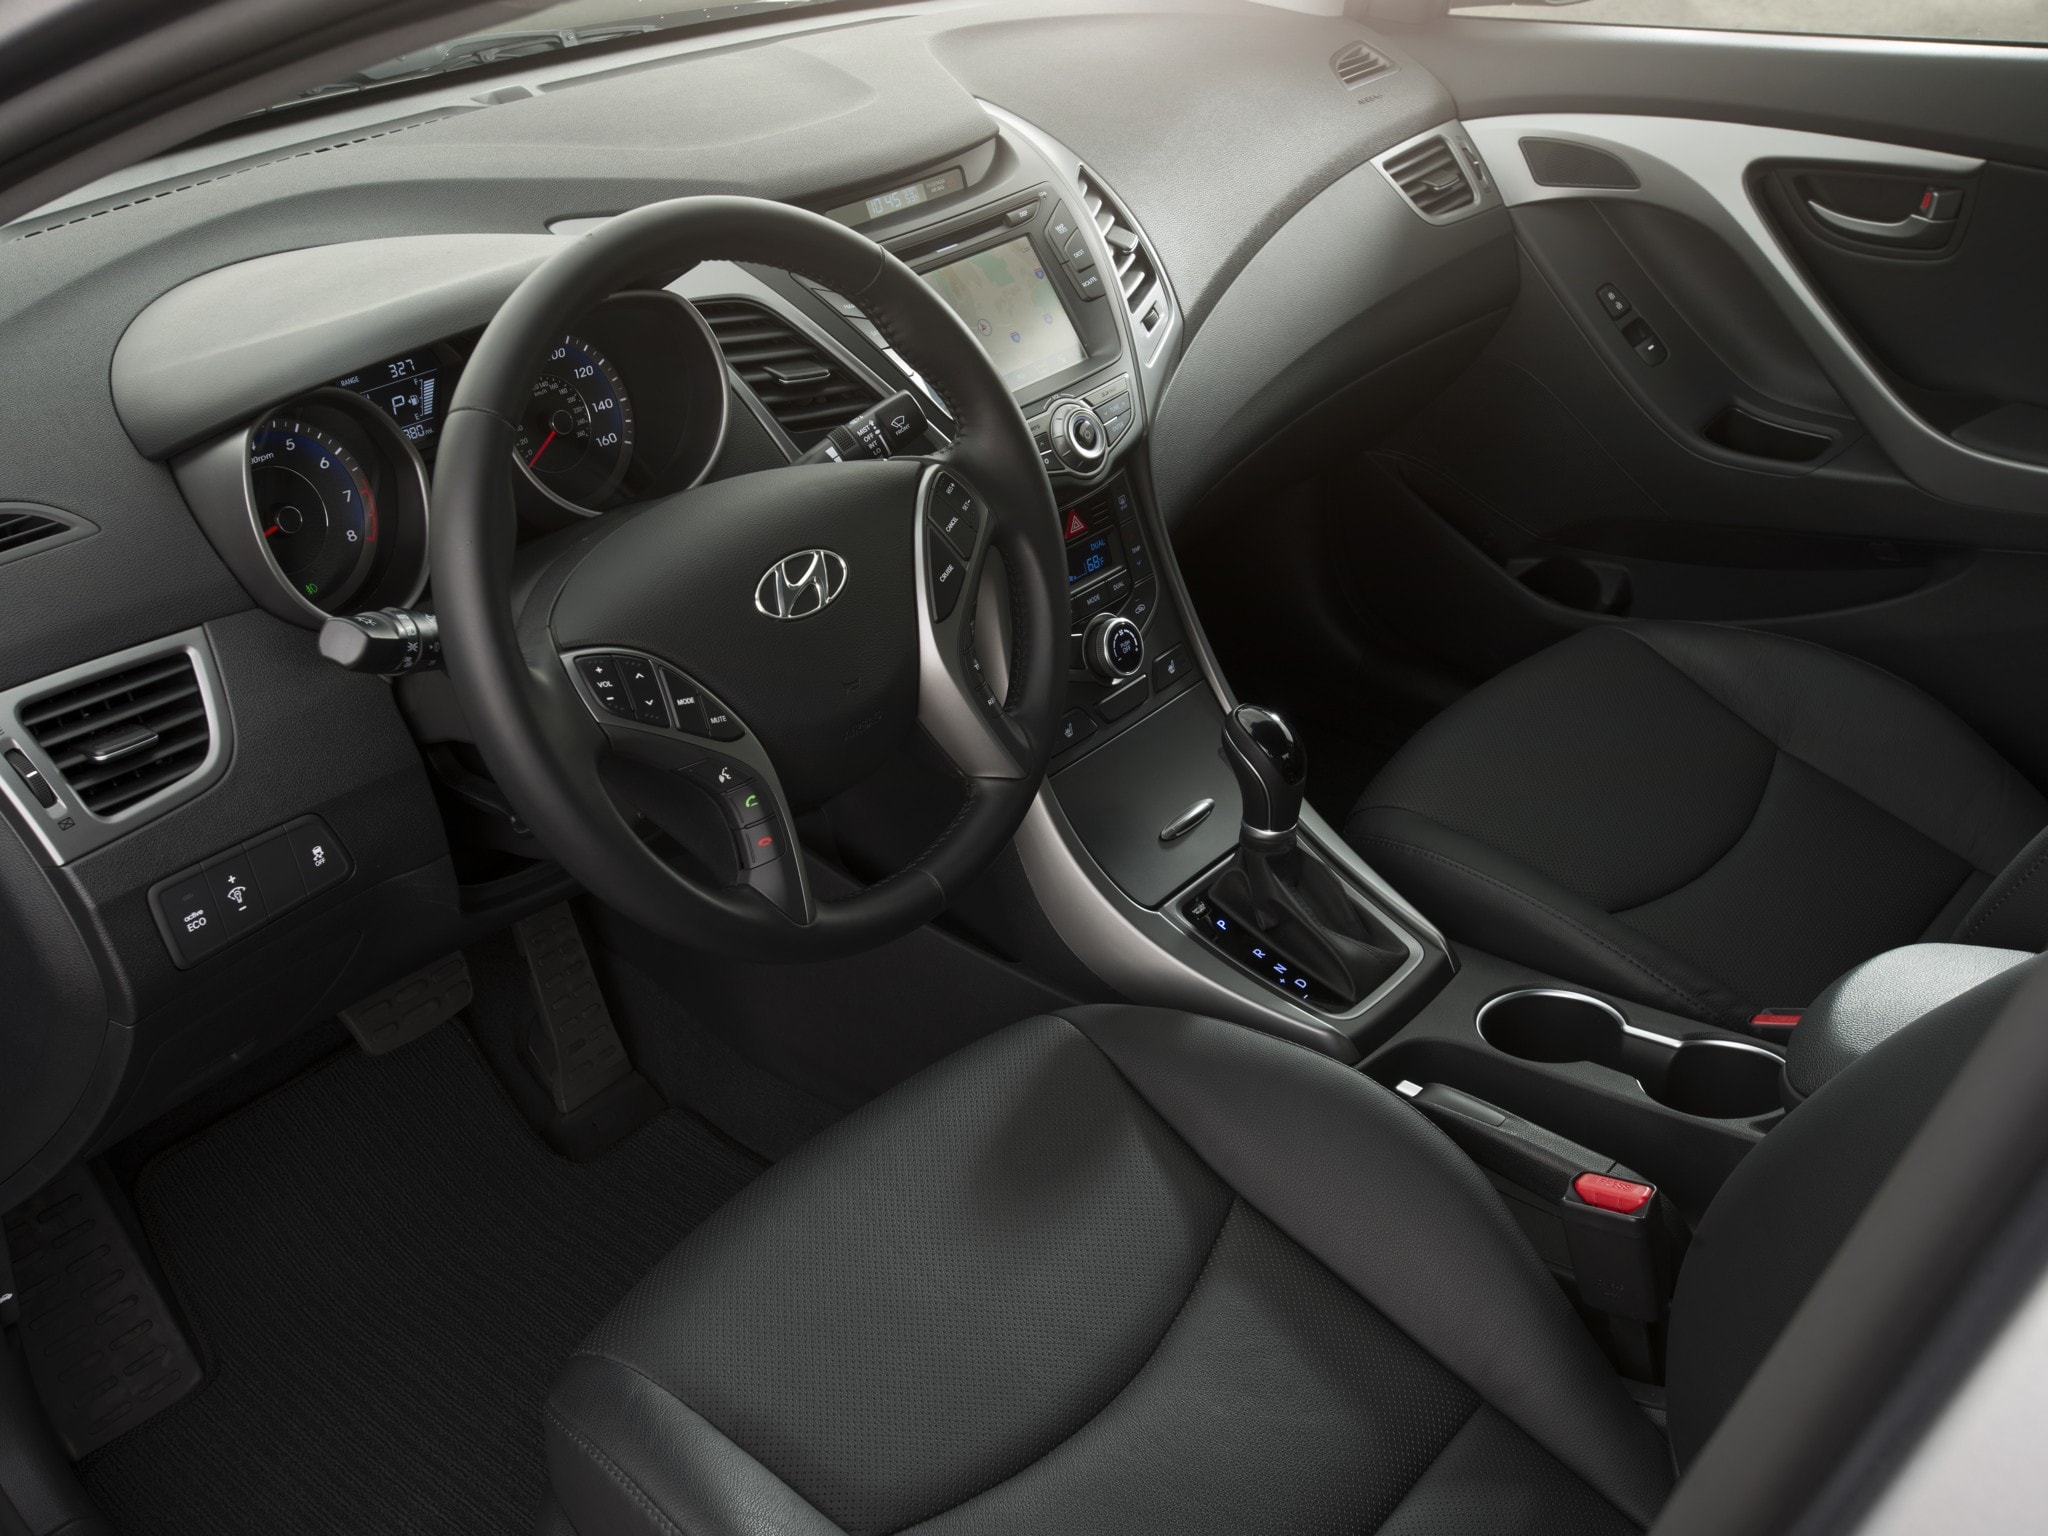 Hyundai Elantra Recall Safety Concerns Addressed